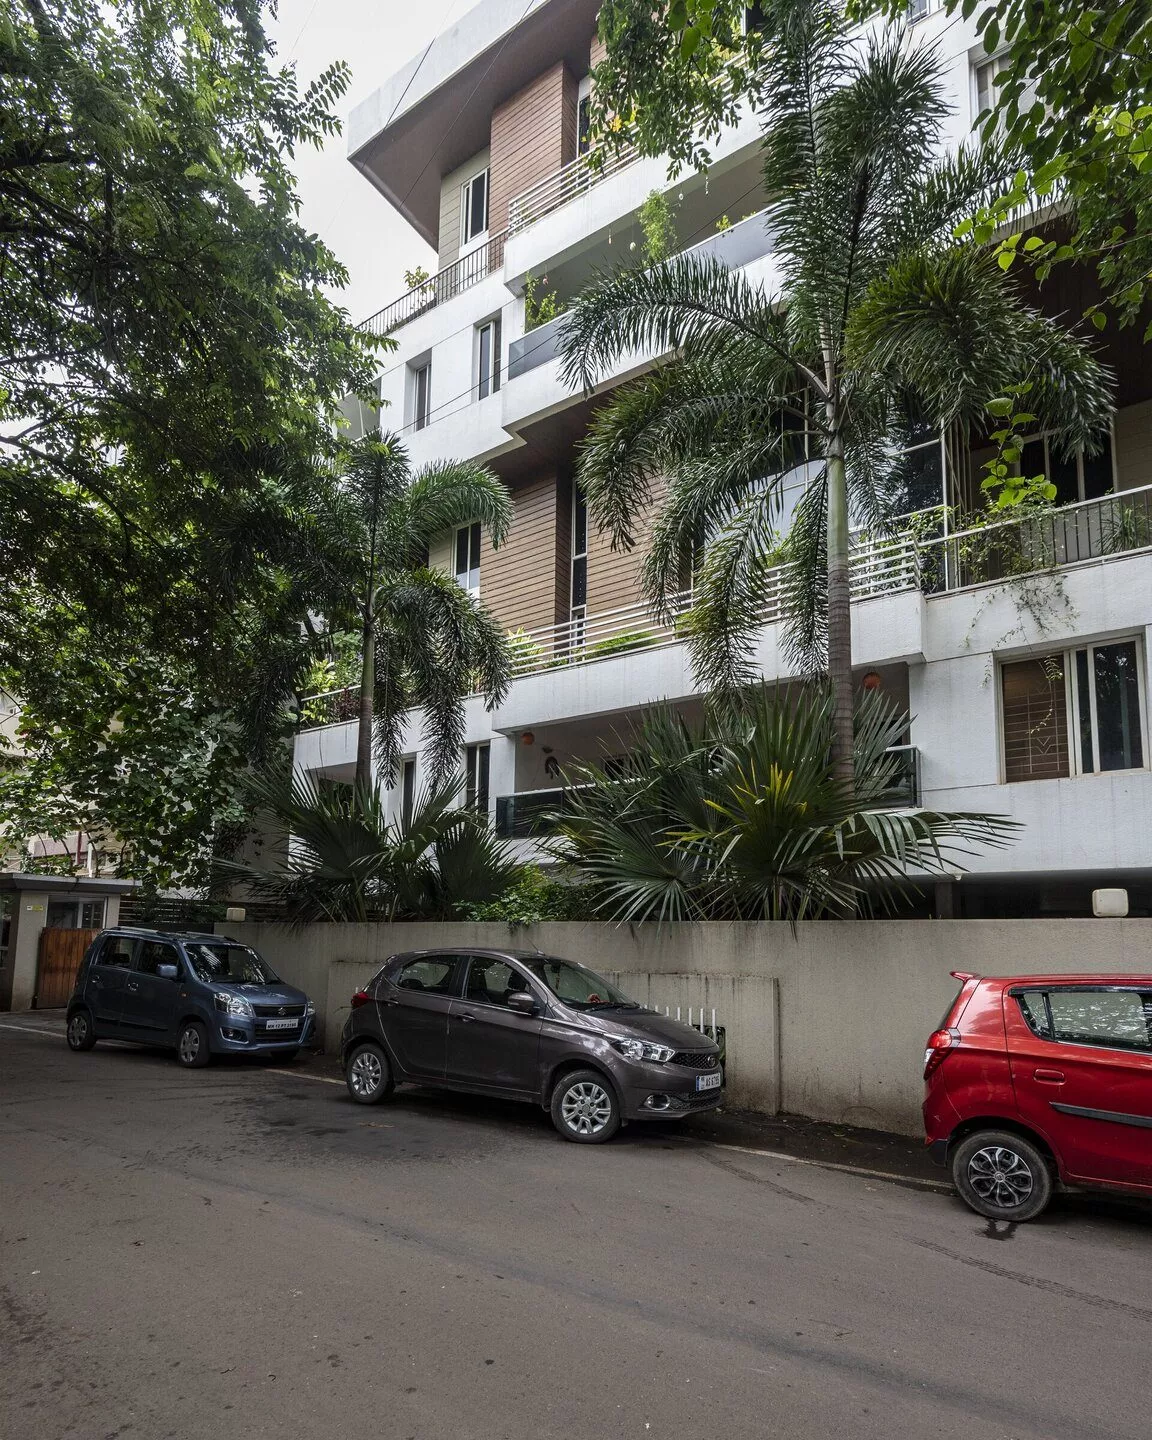 Luxury apartments in Pune | Saraswati | 4 BHK Homes